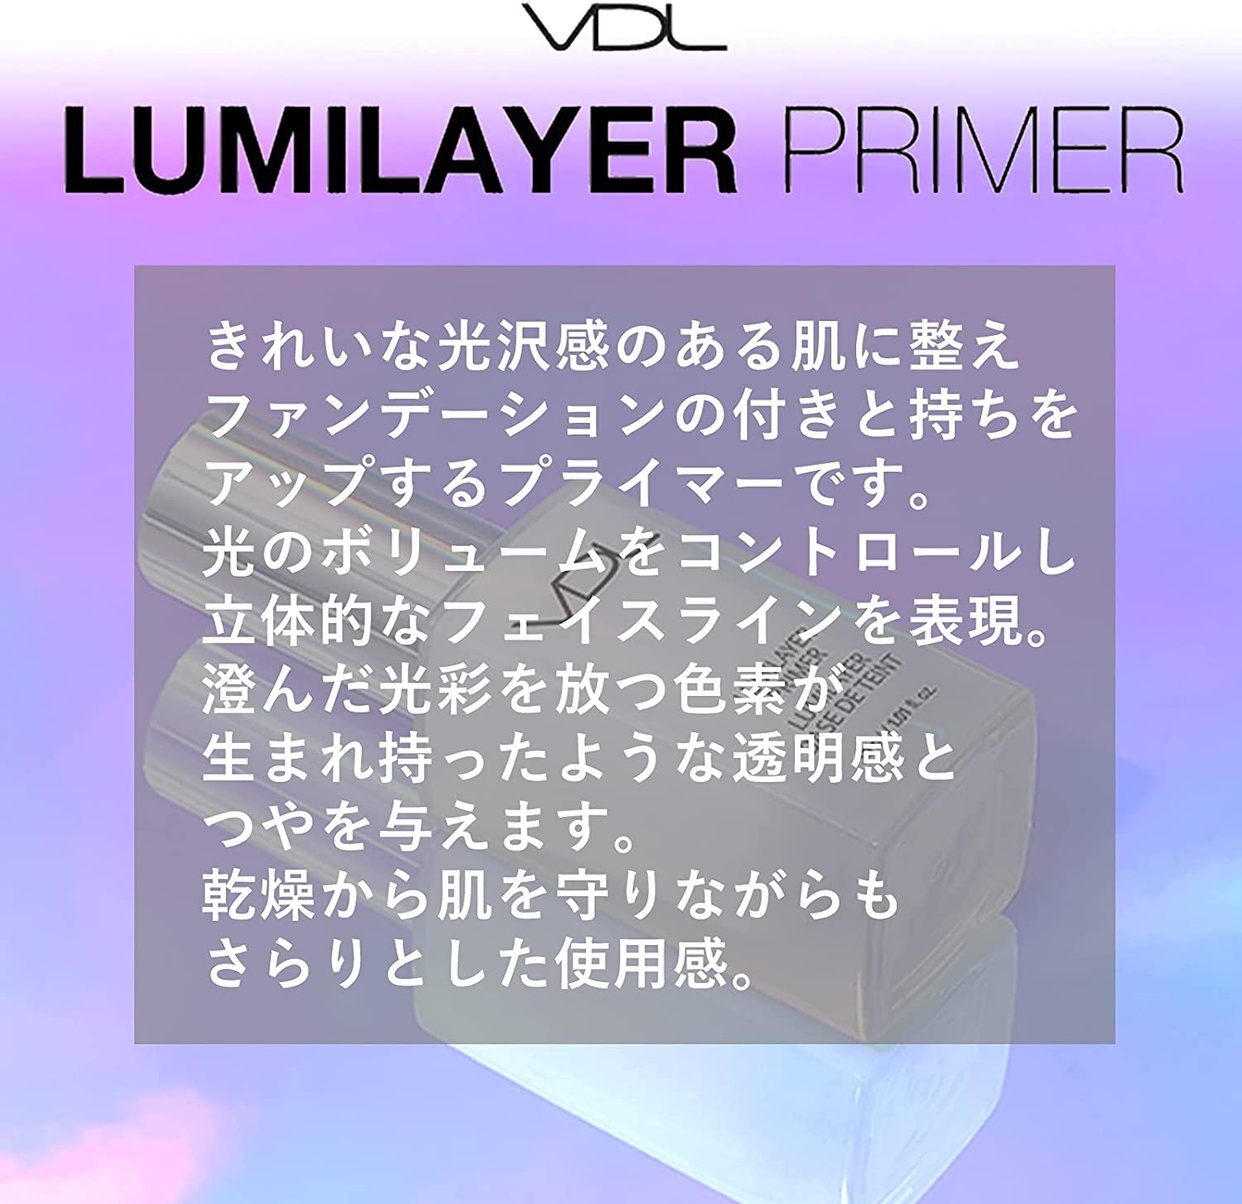 VDL(ブイディーエル) ルミレイヤー プライマーの商品画像6 